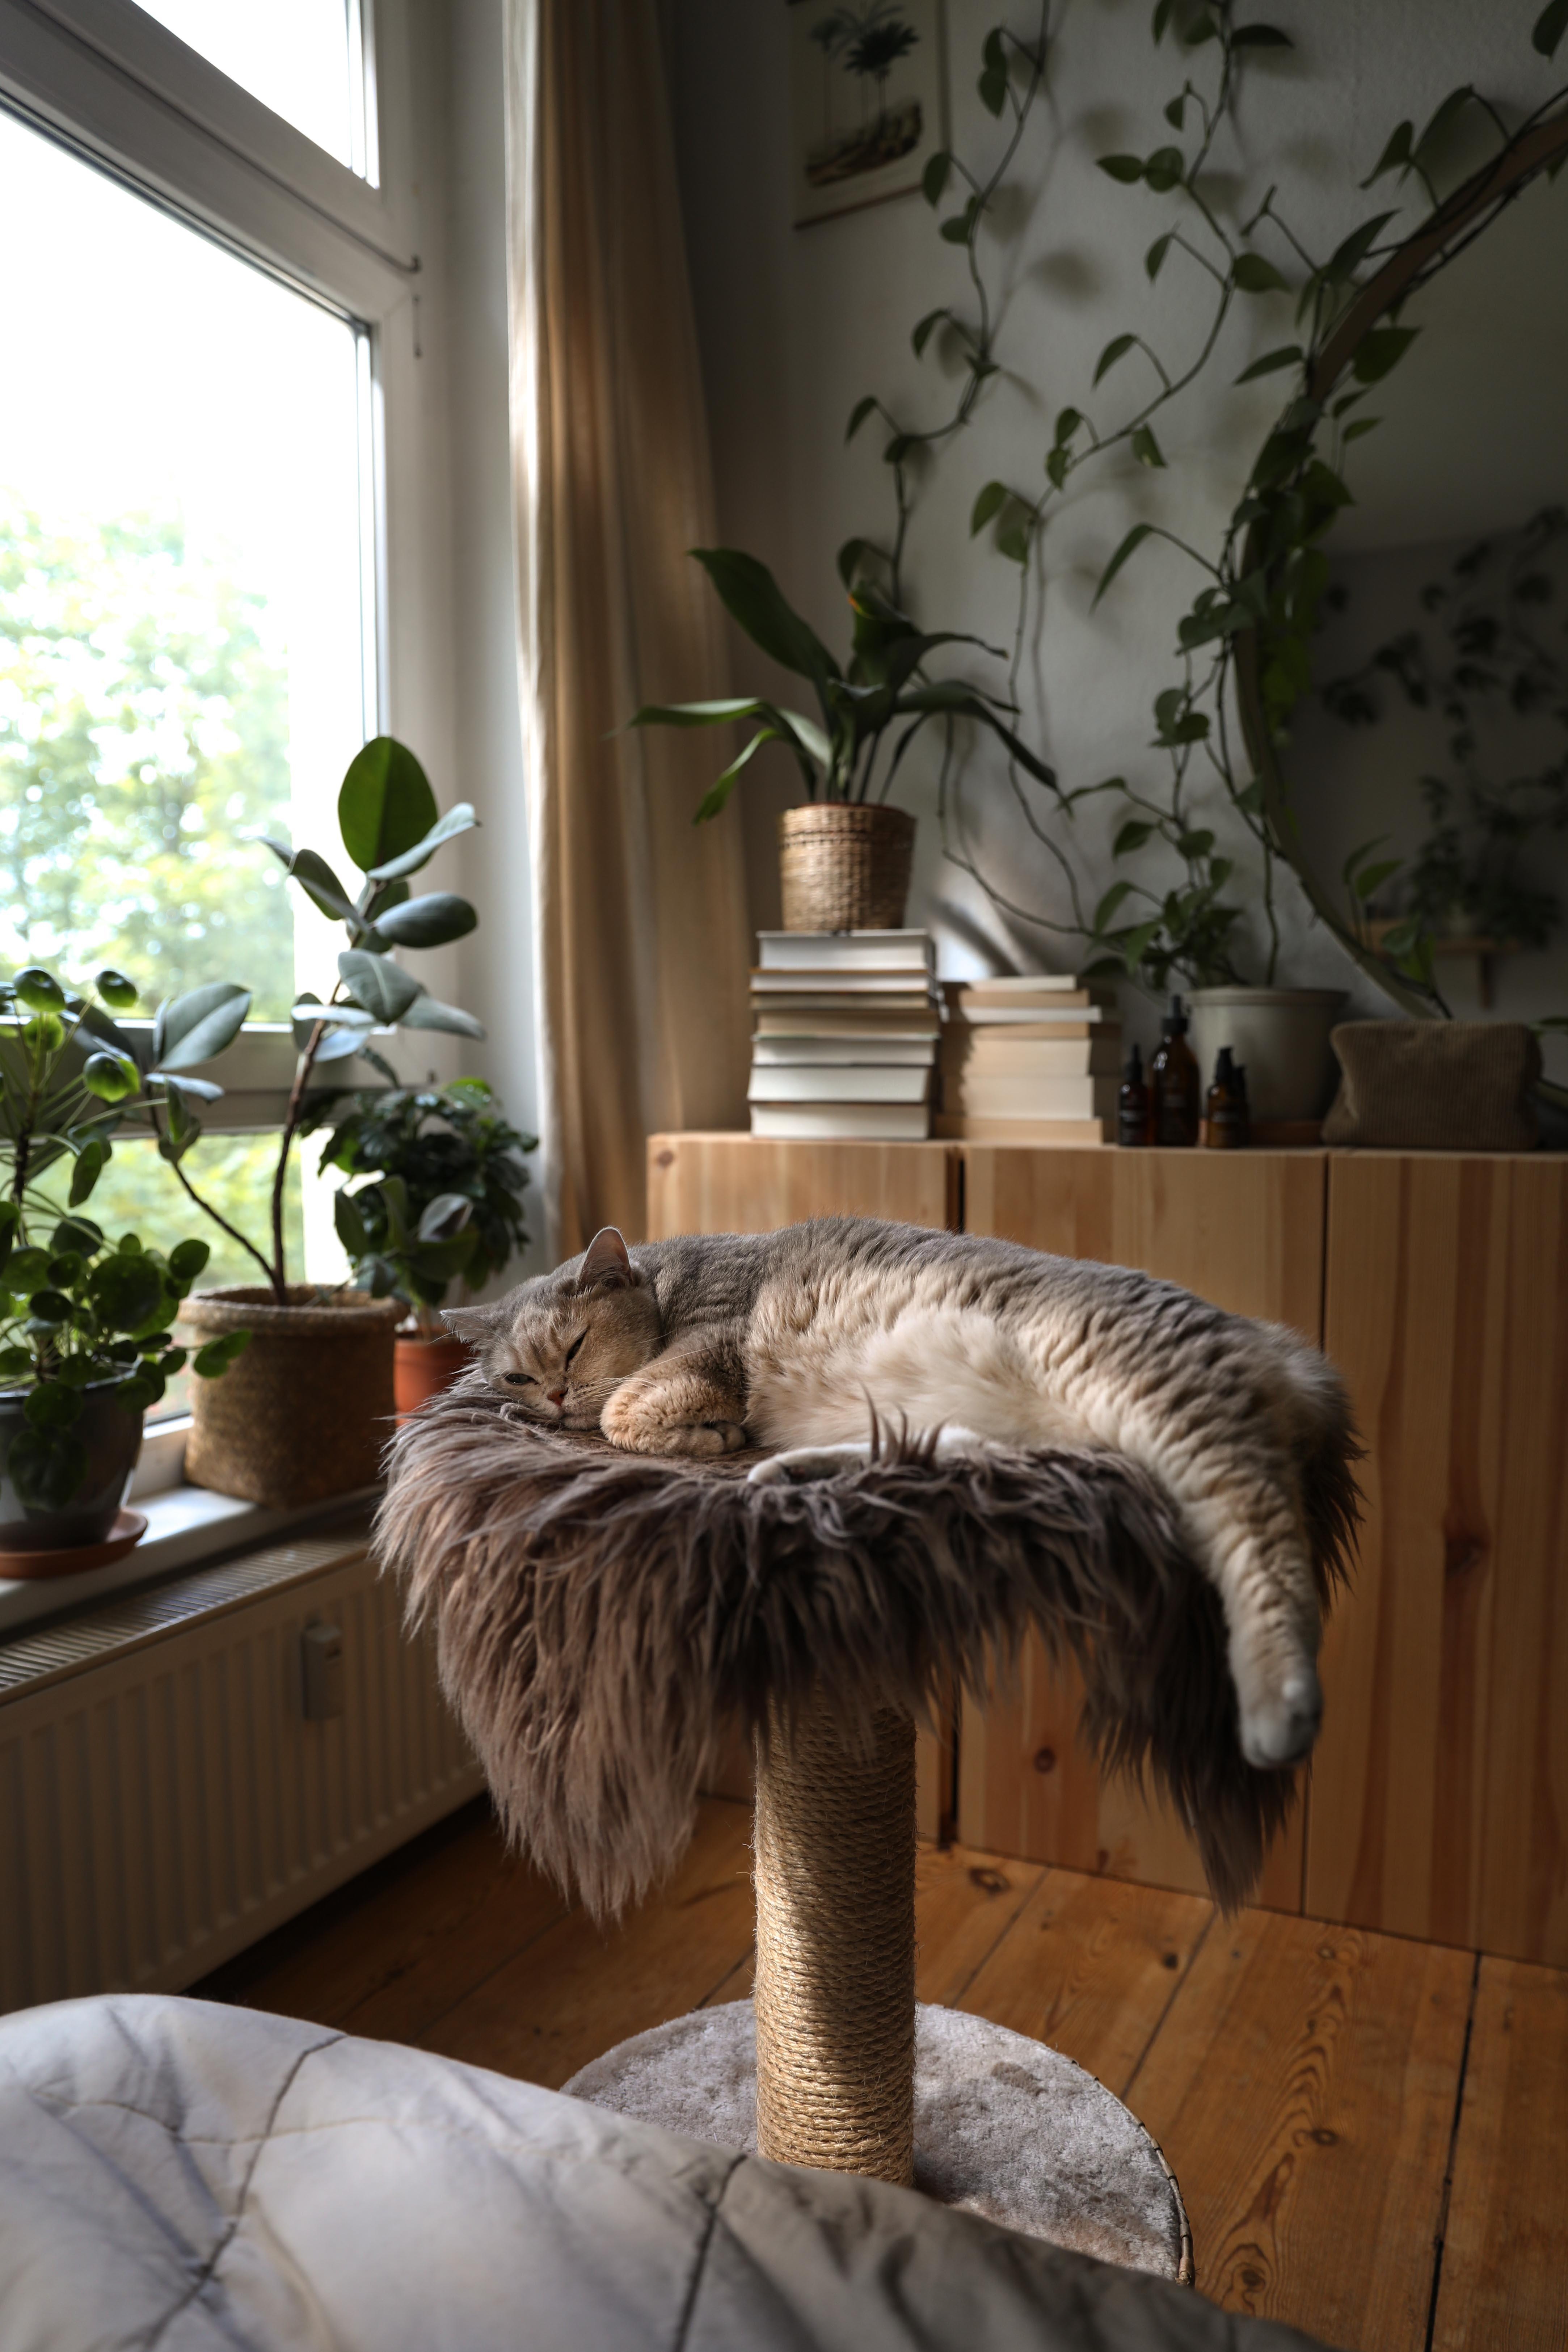 #catlife #cat #catlover #catcontent #catmom #homedecor #cozyhome #cozy #cozyplace #bedroom #katze #katzenliebe 